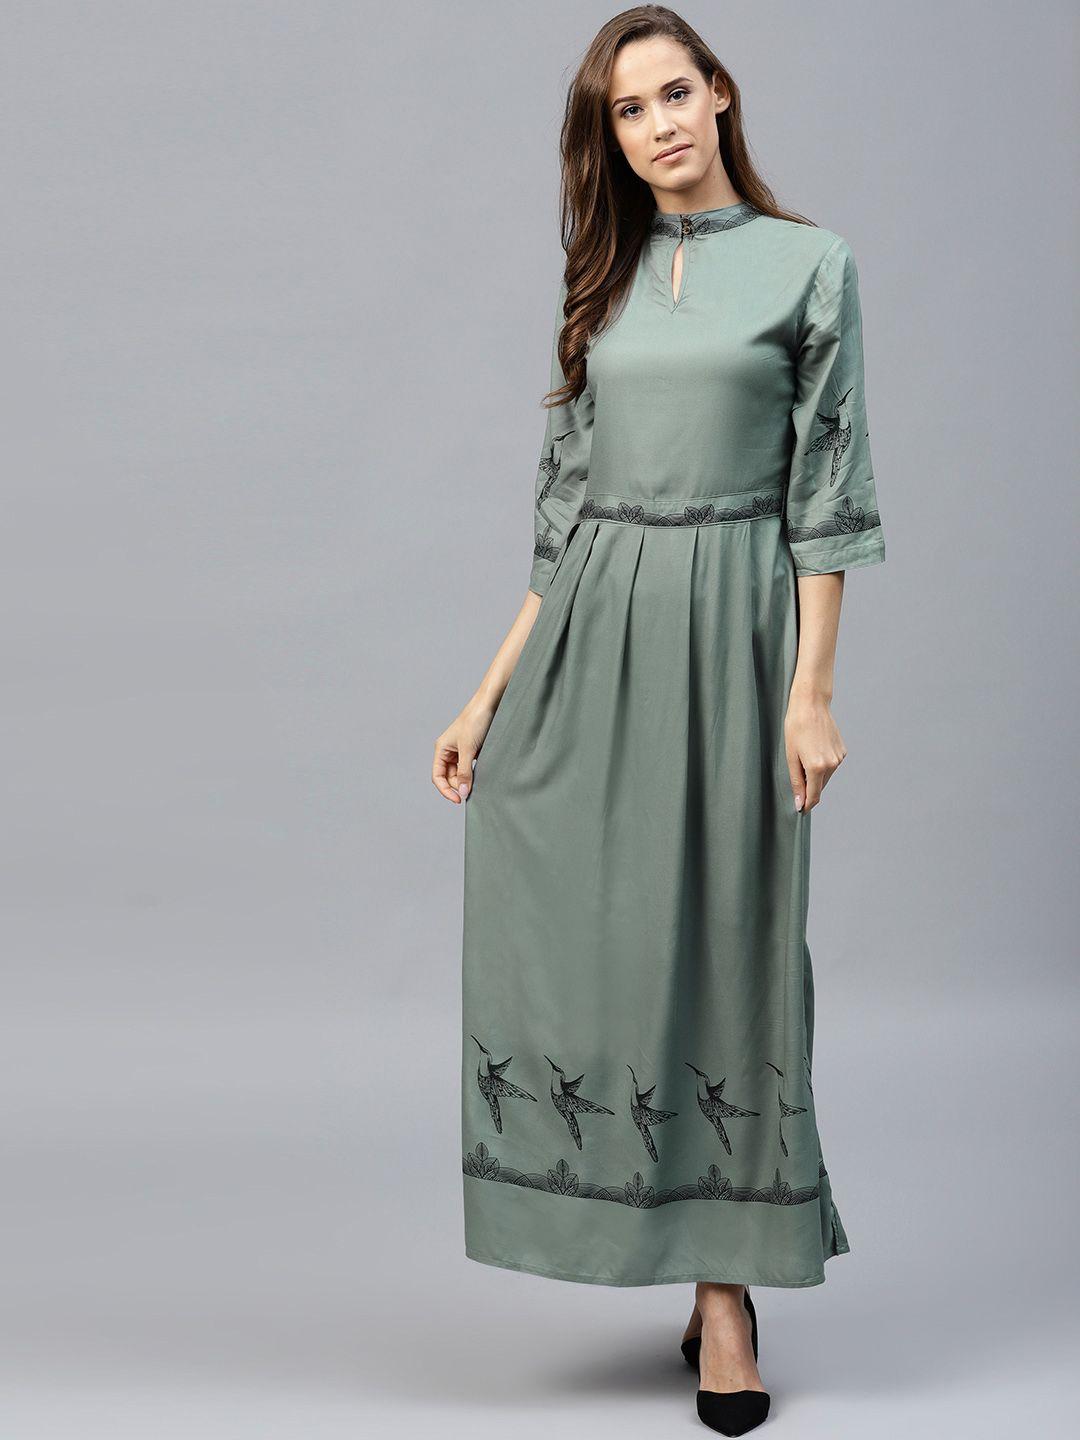 tokyo talkies women olive green solid maxi dress